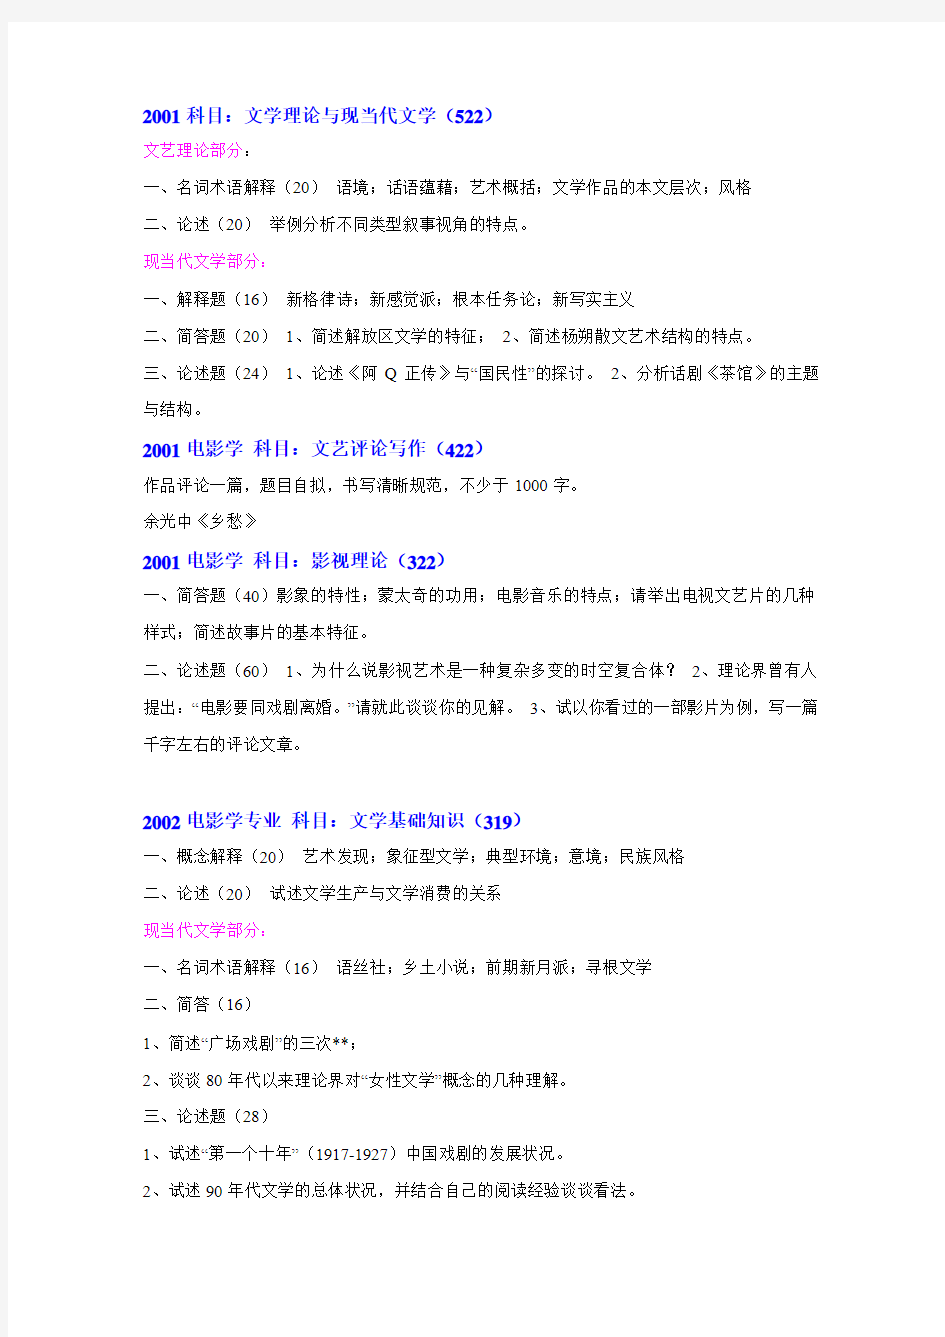 南京师范大学电影学历年真题(01-10年完整版)